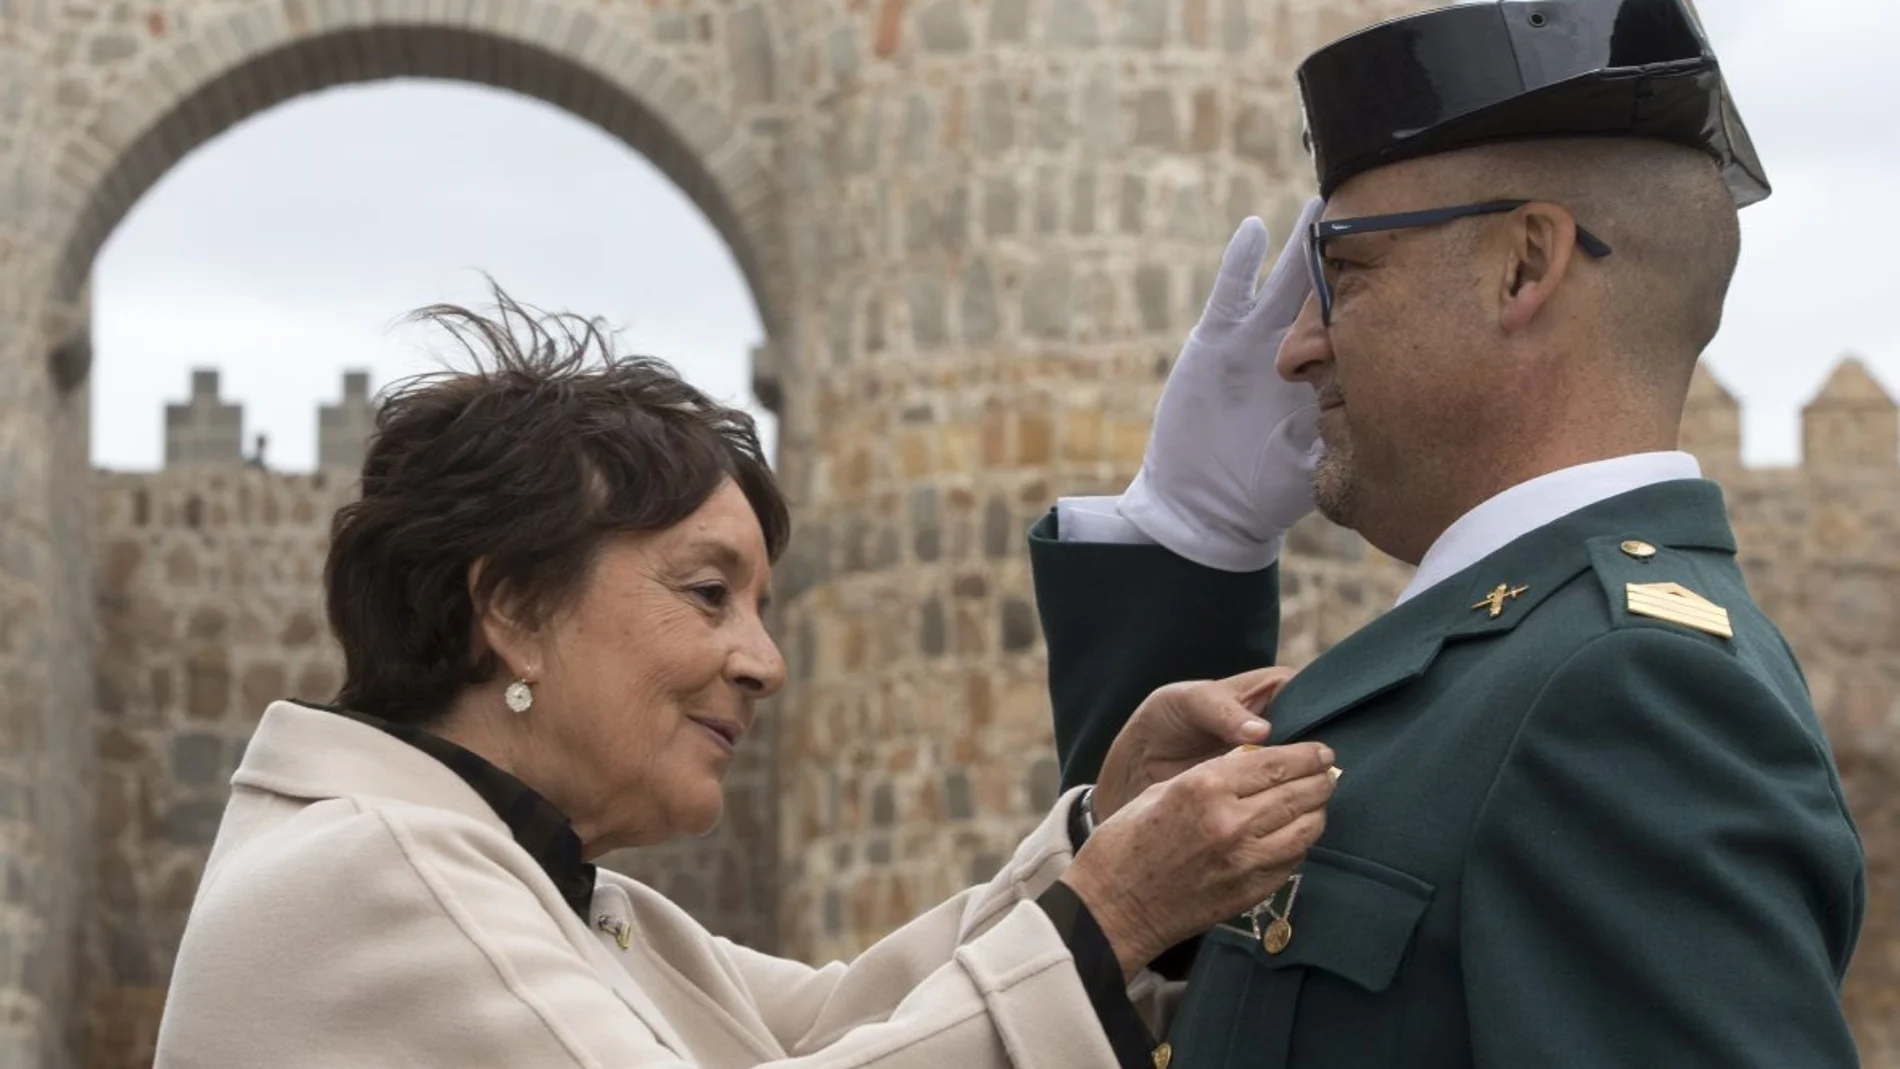 La delegada del Gobierno, Mercedes Martín, preside los actos del Día de la patrona de la Guardia Civil, la Virgen del Pilar, en Ávila